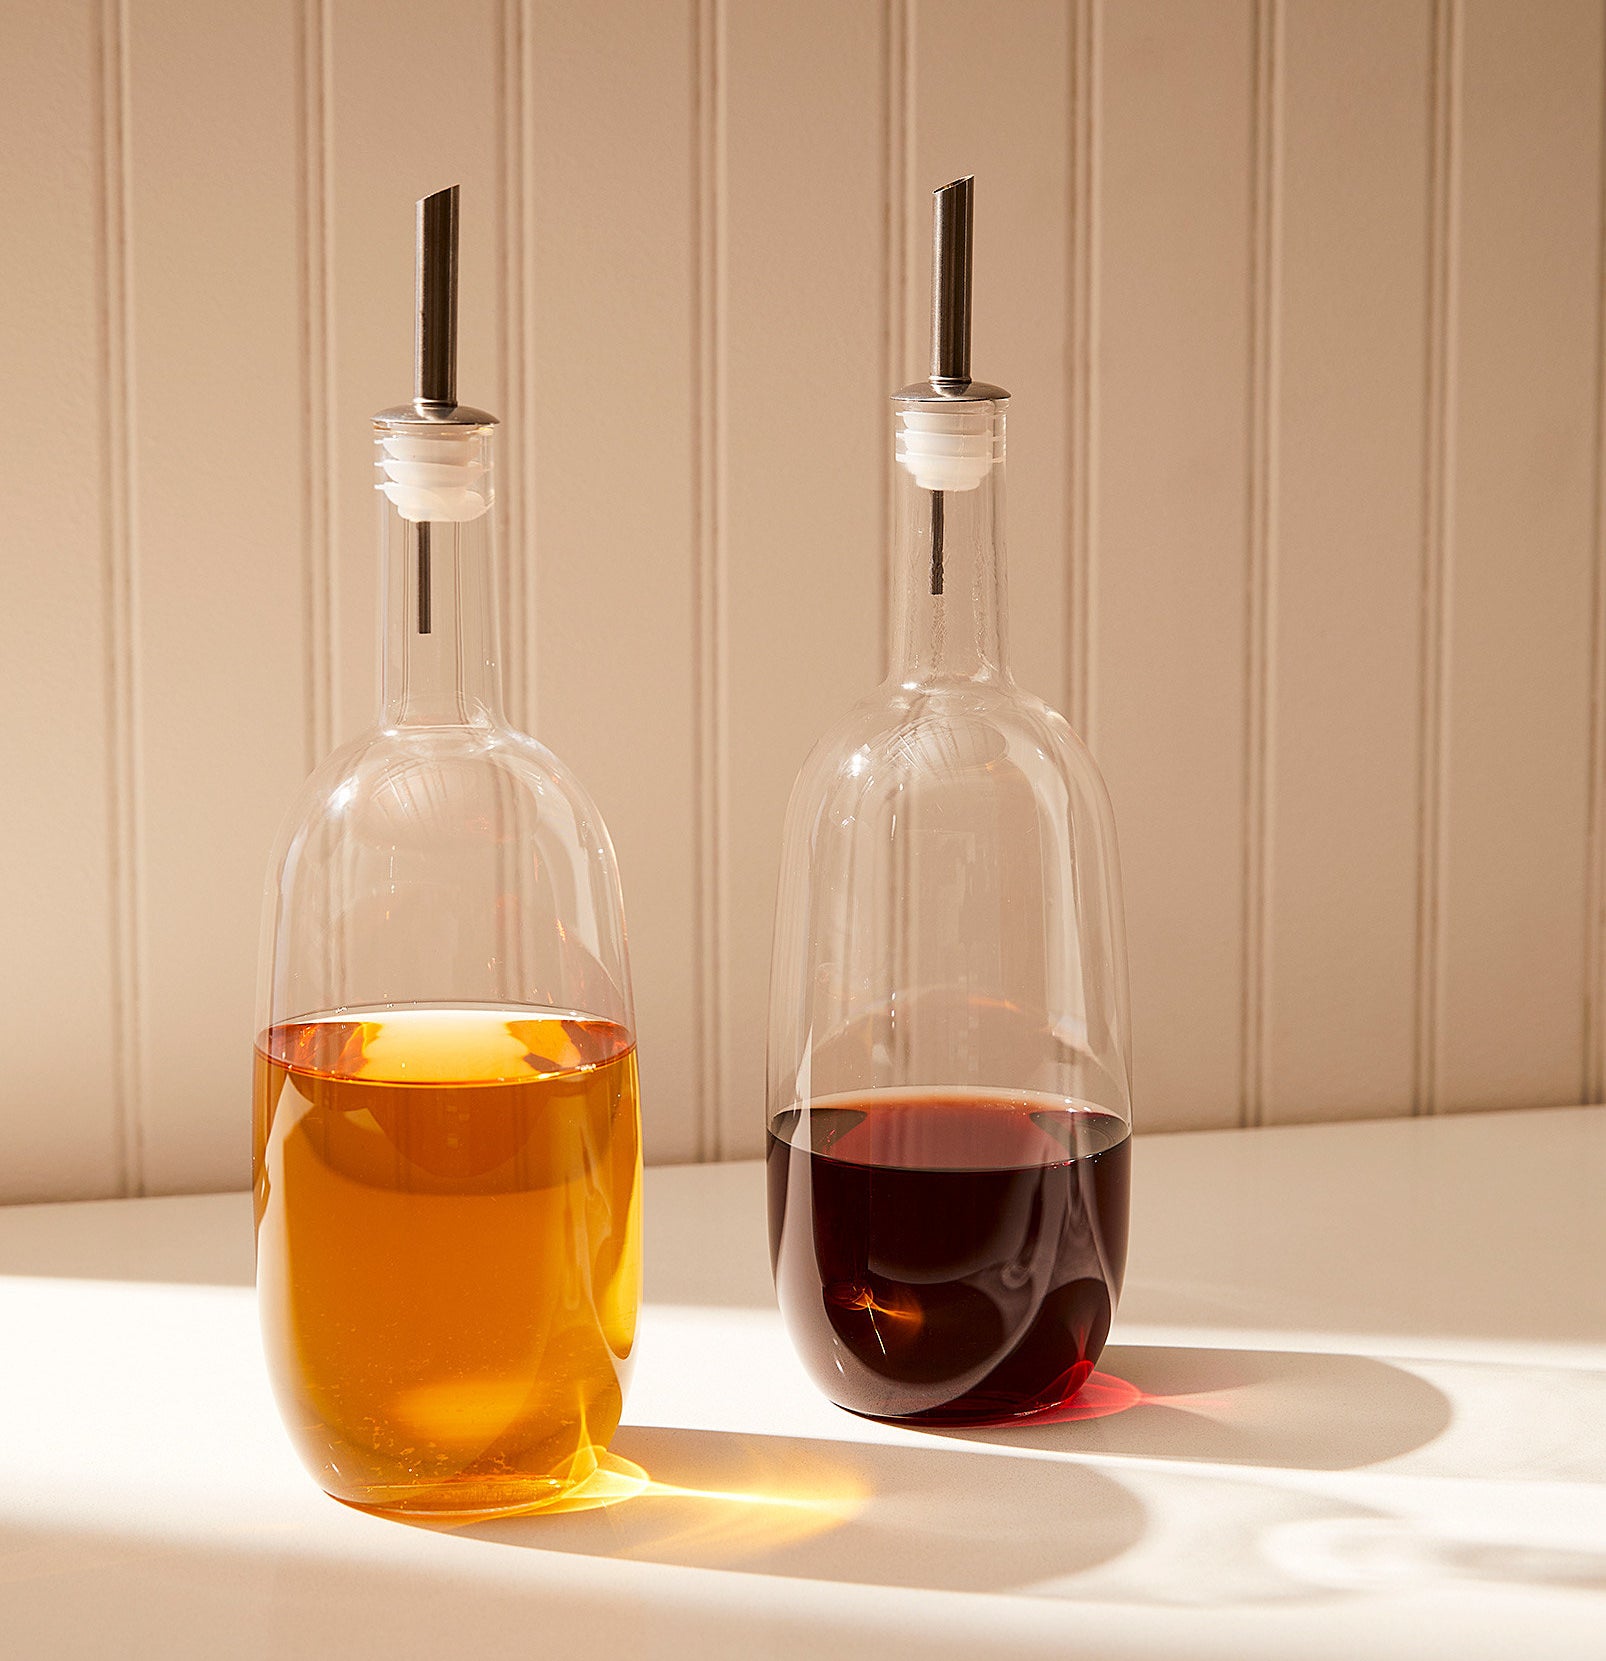 Oil and vinegar in the bottles